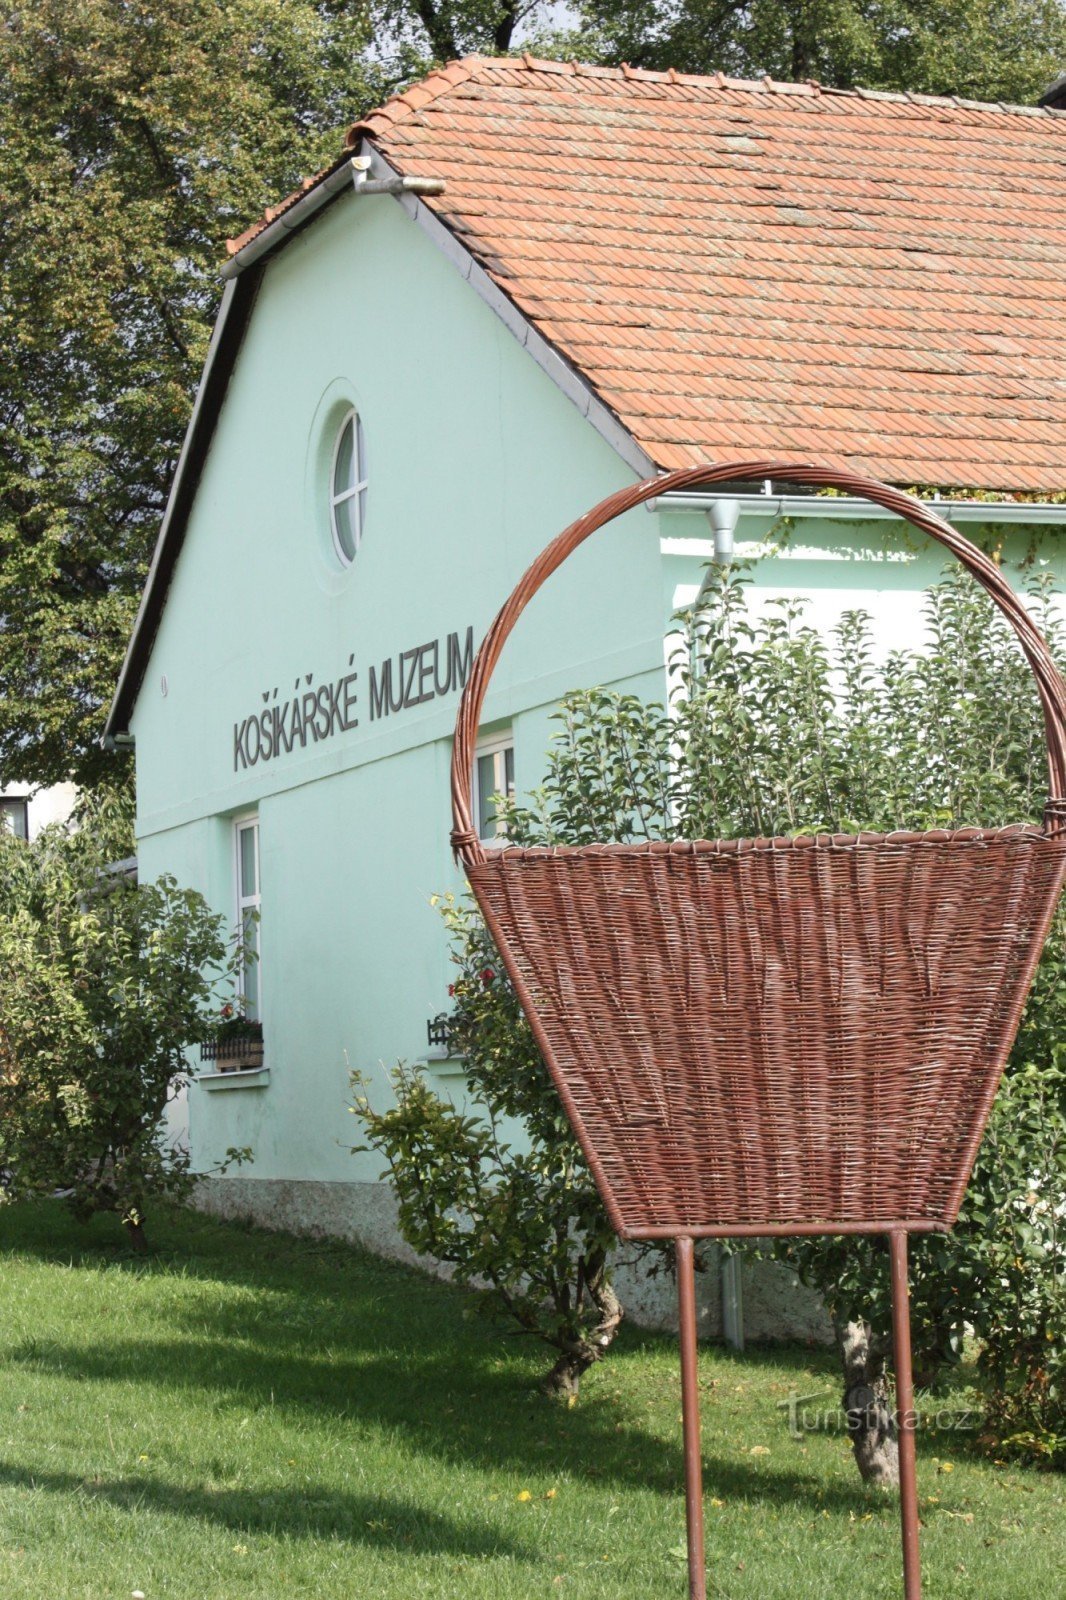 Edinstvena razstava muzeja košarke v Morkovice-Slížany v regiji Kroměříž